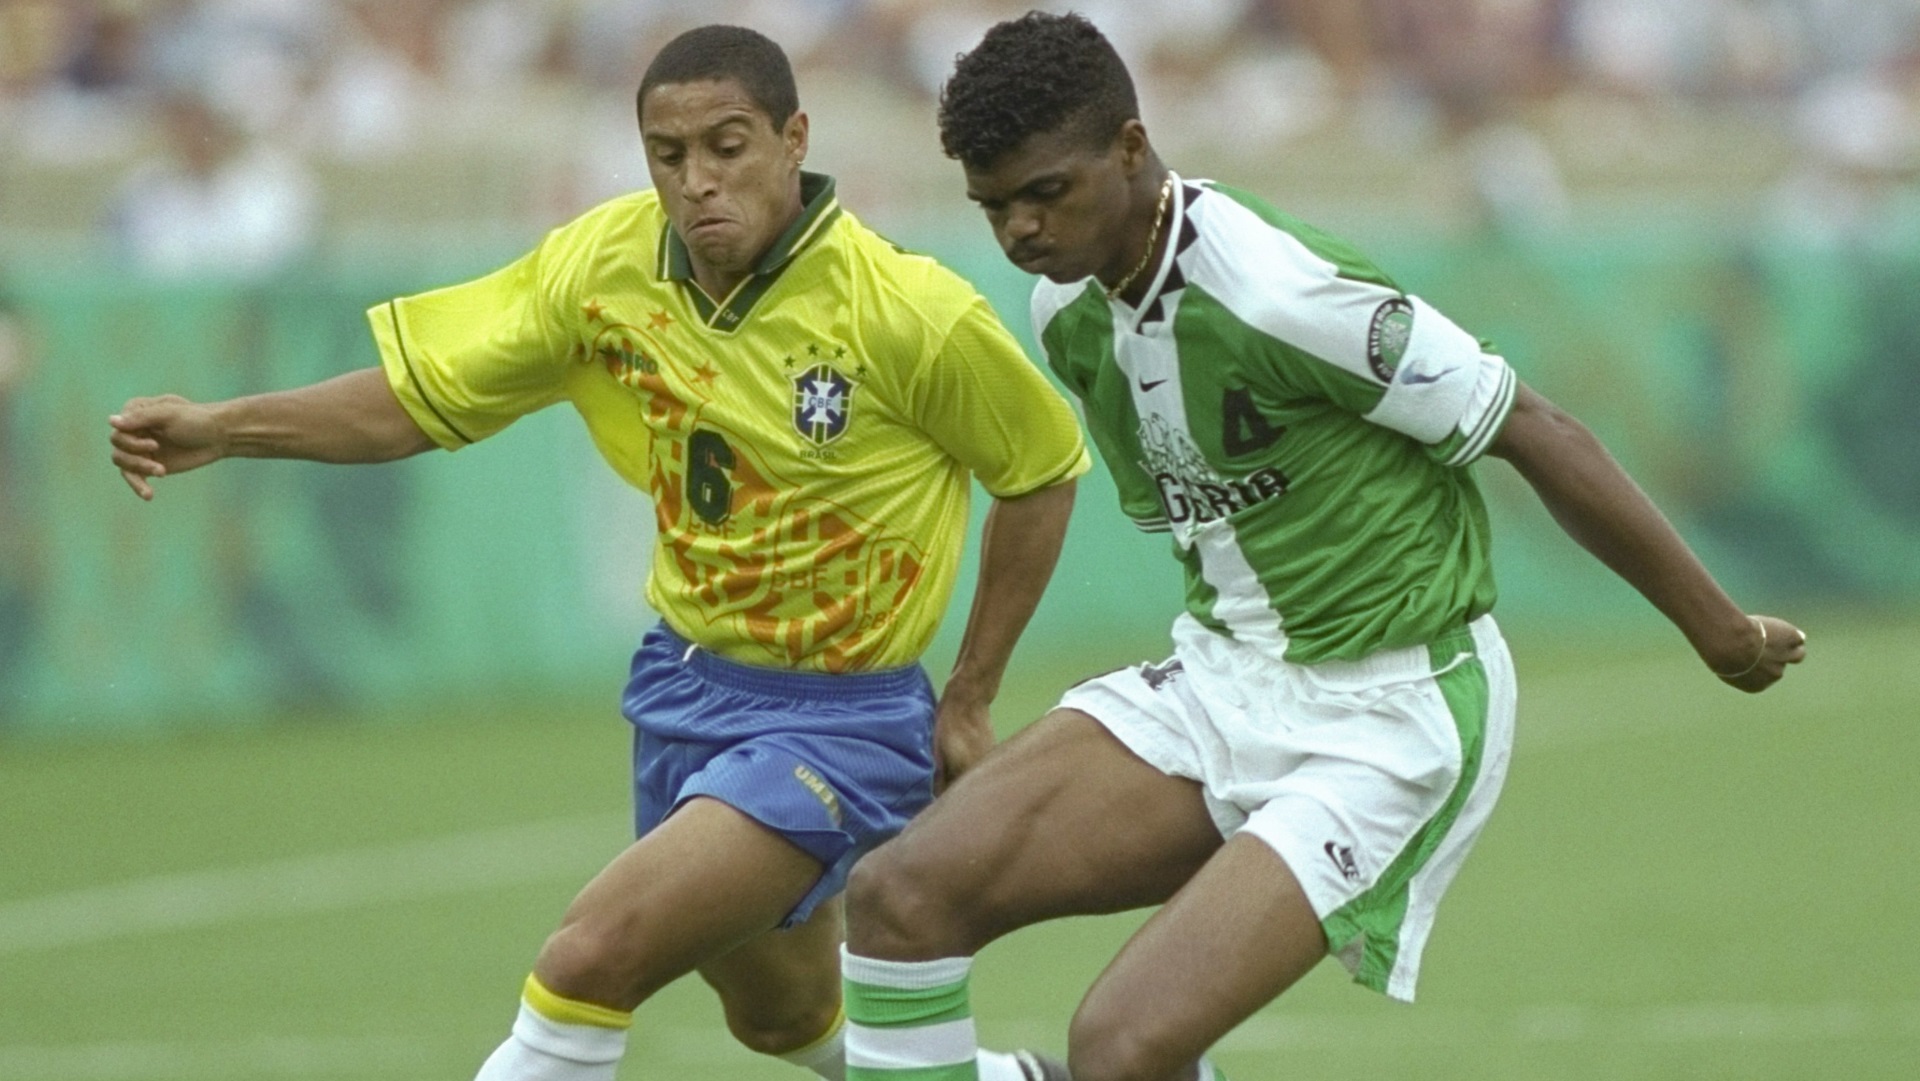 8- NIGÉRIA 1996: A Nigéria fez história ao consagrar-se campeã olímpica de futebol masculino nas Olimpíadas de Atlanta, em 1996. Com um uniforme que alternava listras verdes com brancas, a seleção eliminou o Brasil na semifinal, em um jogo histórico, com o placar de 4 a 3. O craque Kanu foi o principal jogador da partida, marcando 2 gols. 